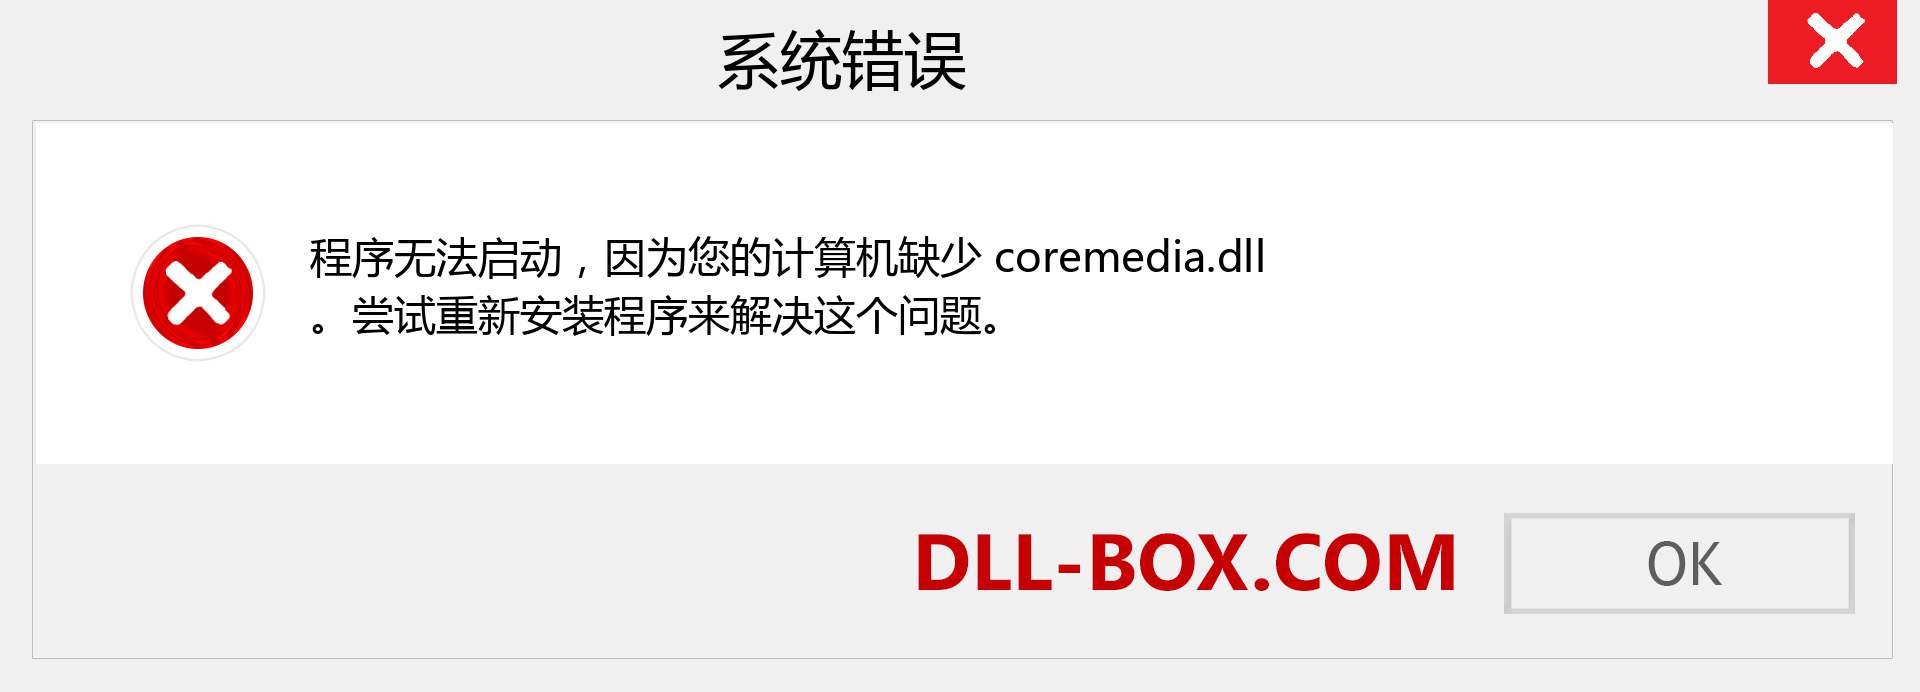 coremedia.dll 文件丢失？。 适用于 Windows 7、8、10 的下载 - 修复 Windows、照片、图像上的 coremedia dll 丢失错误